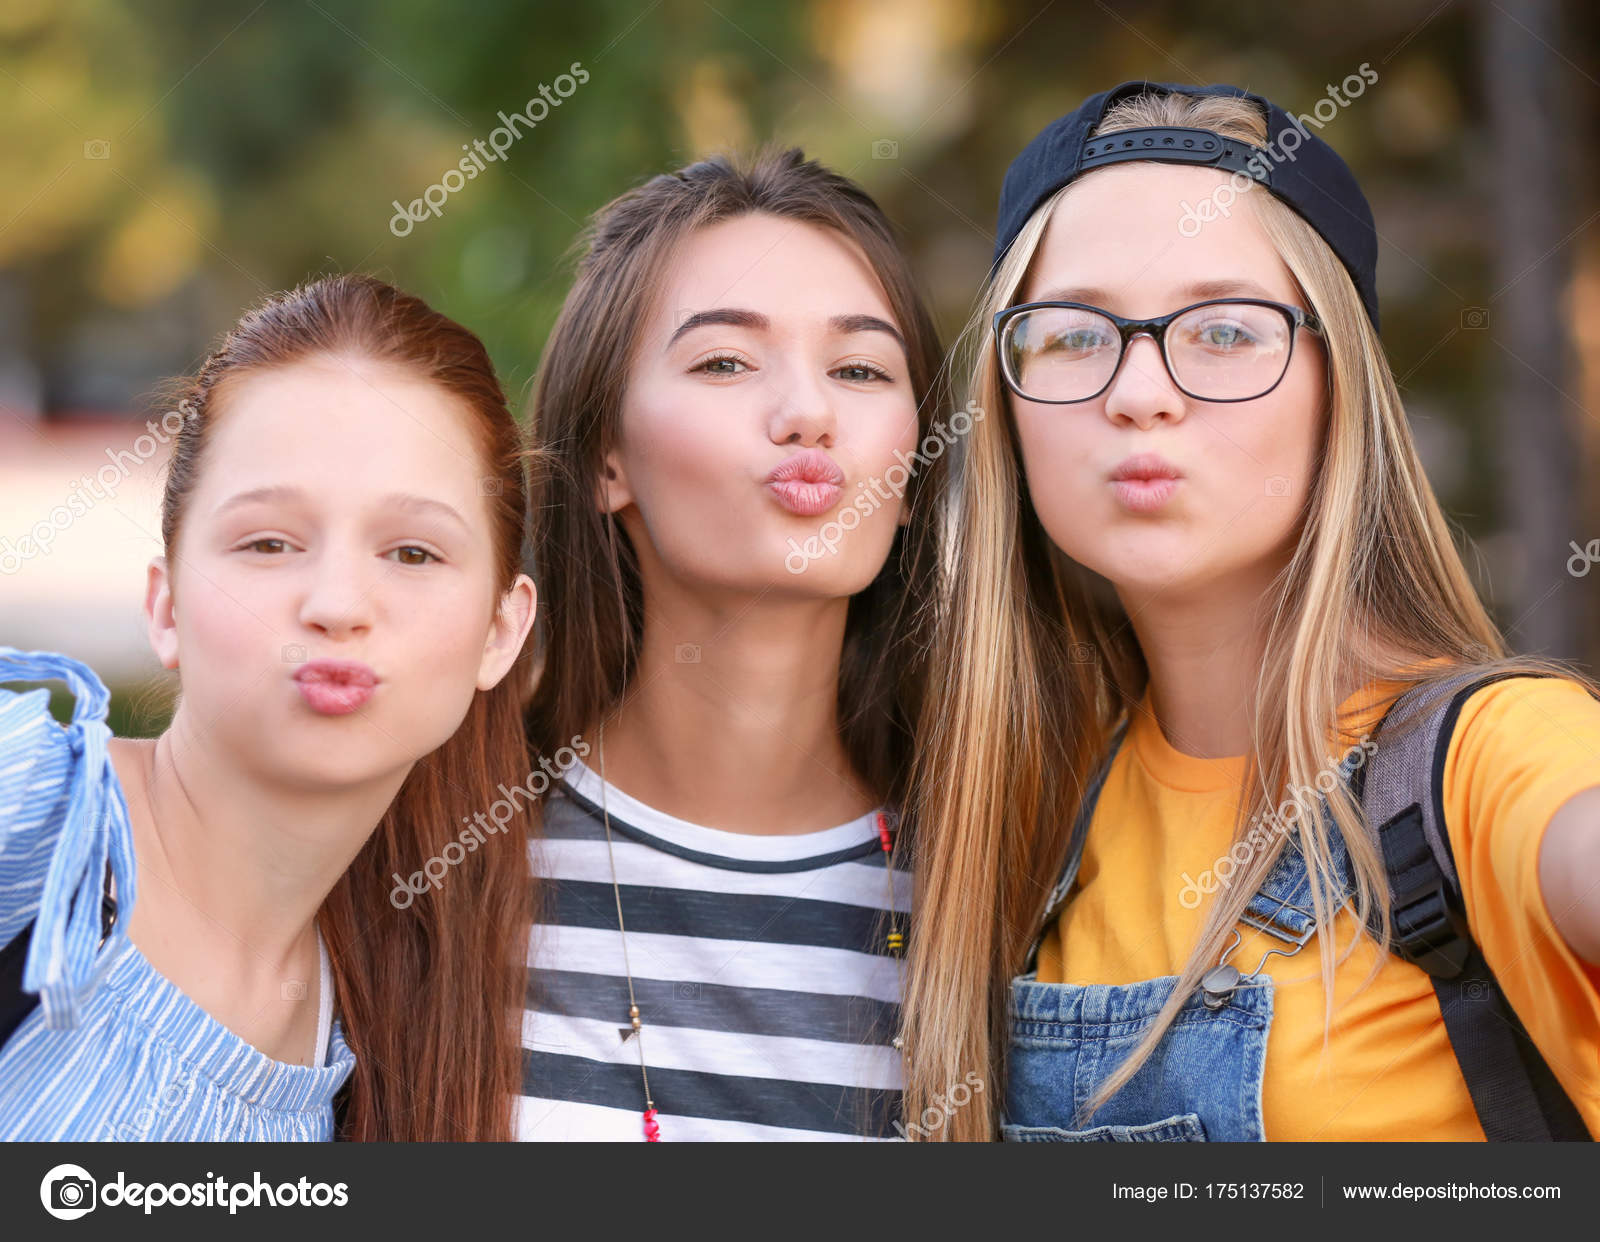 Cute Teen Girls Taking Selfies